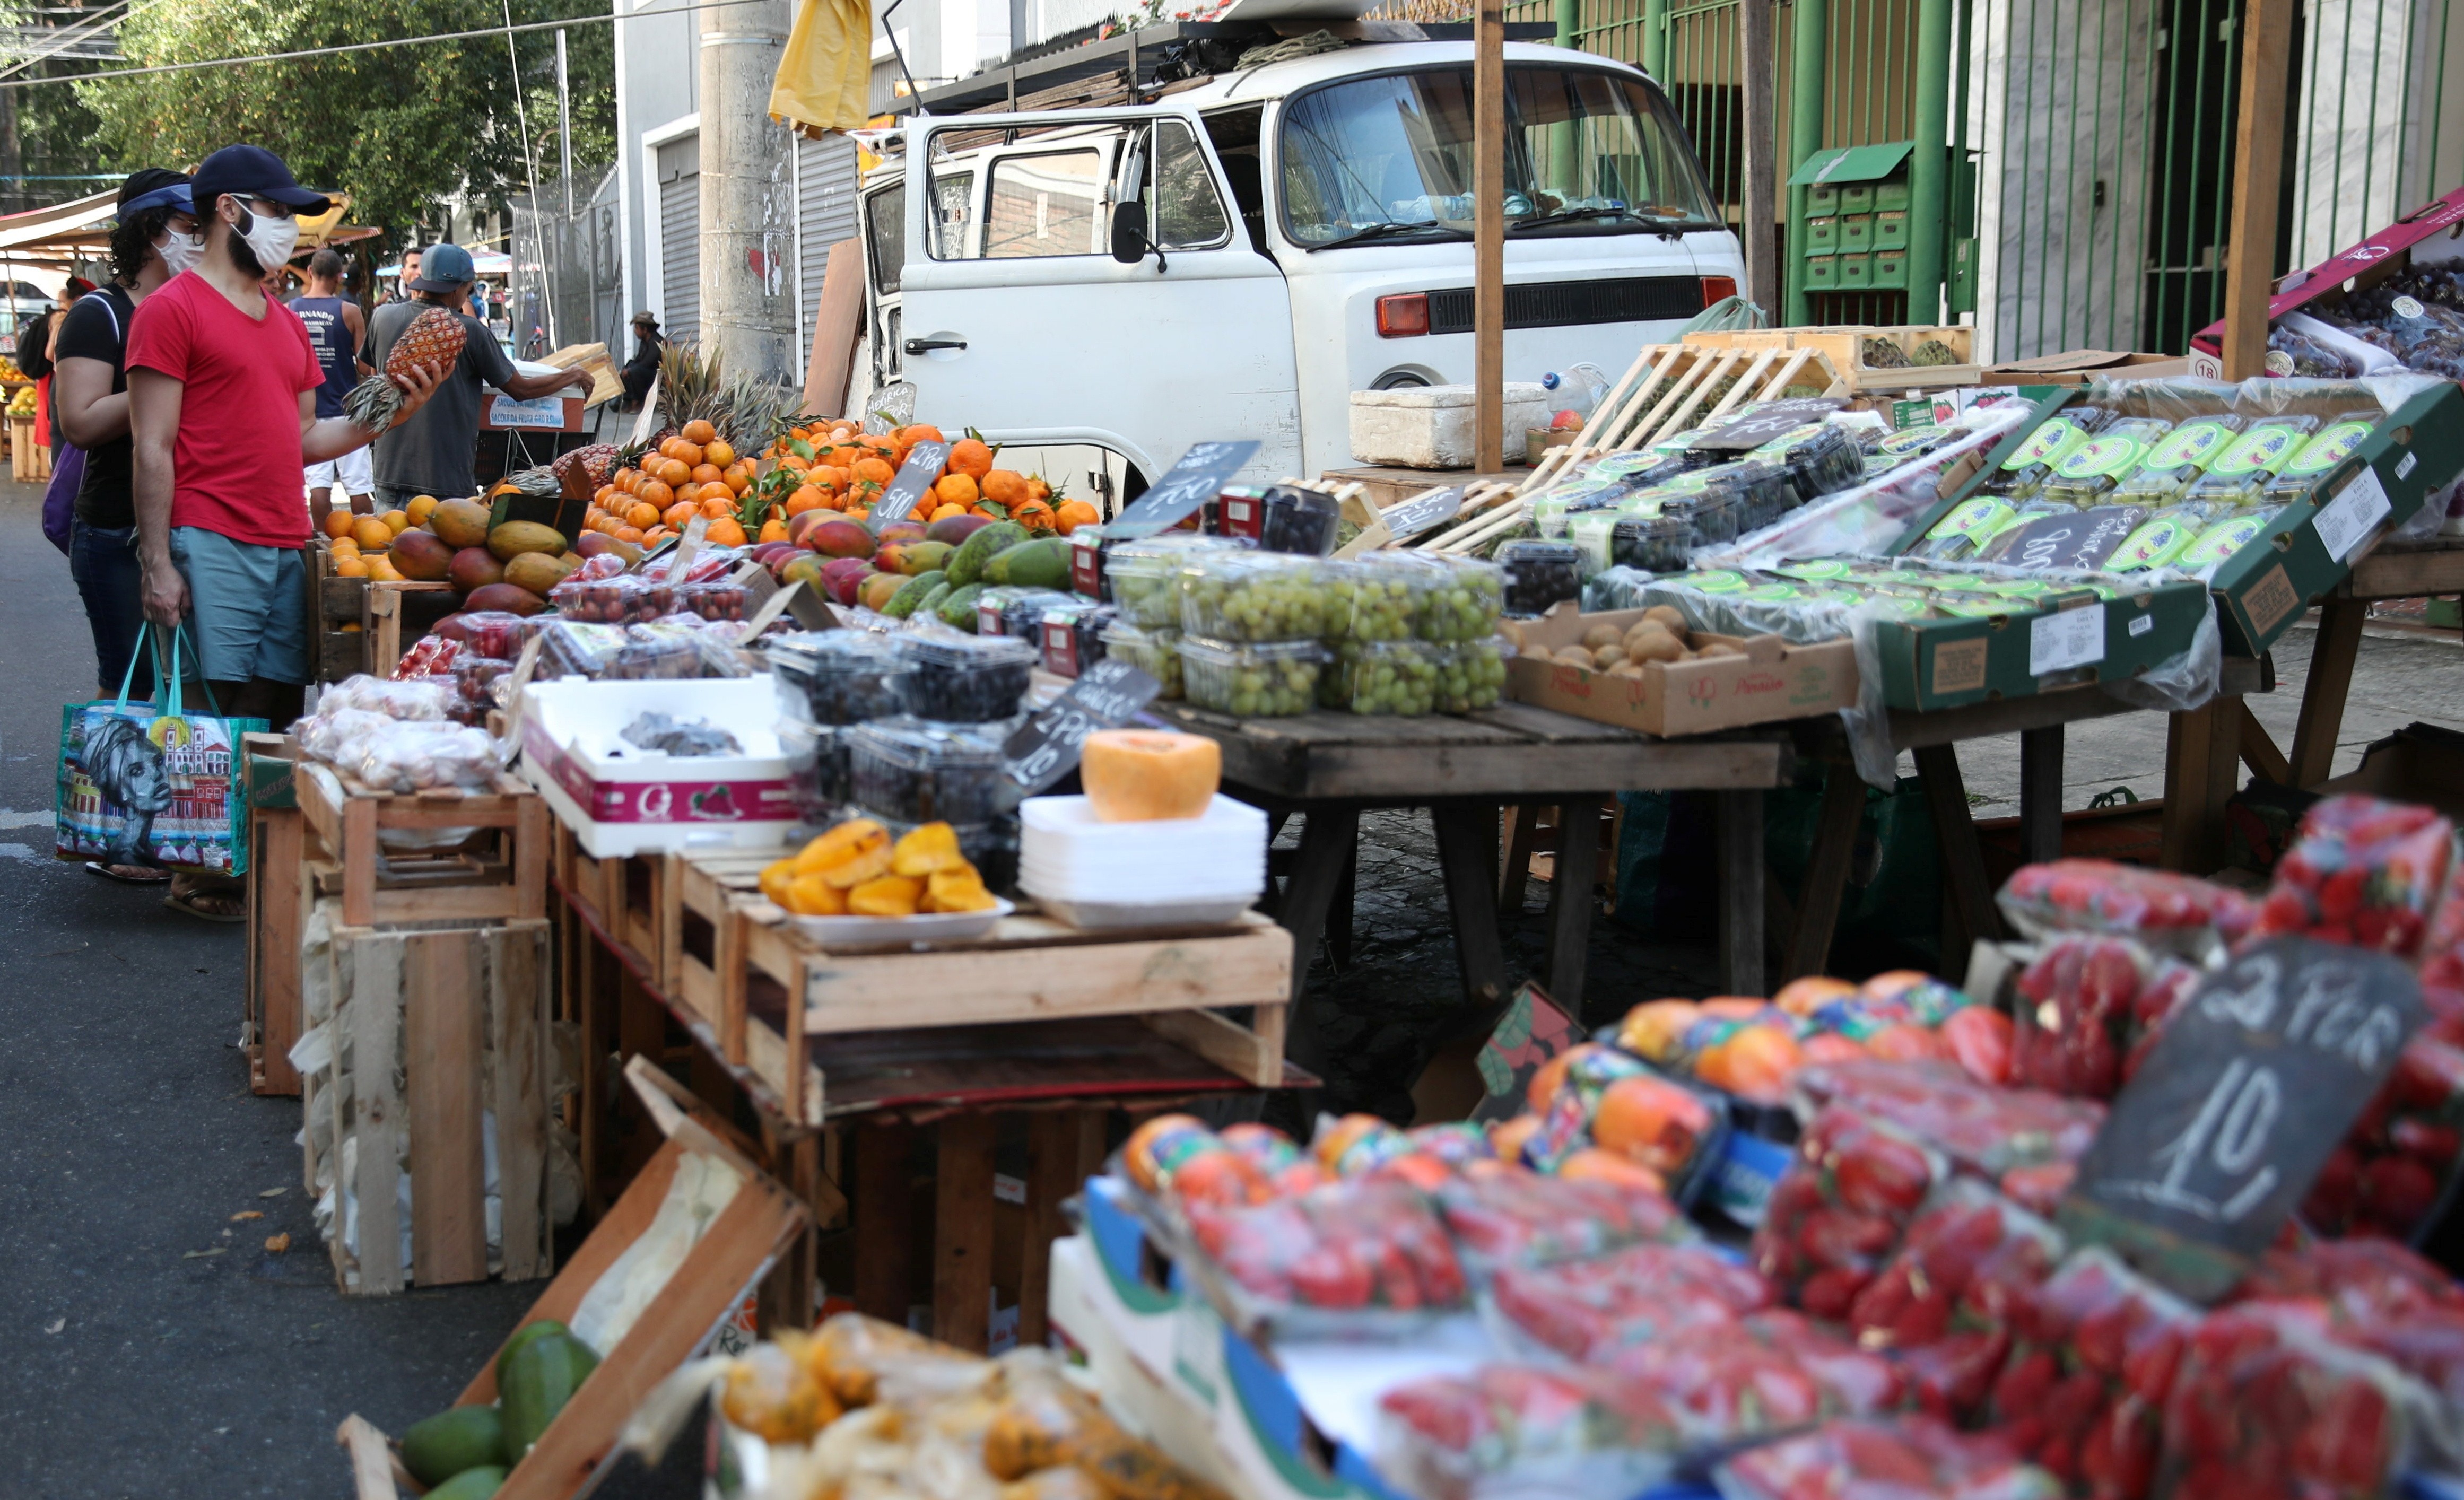 Consumidores fazem compras em mercado de rua do Rio de Janeiro  (Foto: REUTERS/Ricardo Moraes)